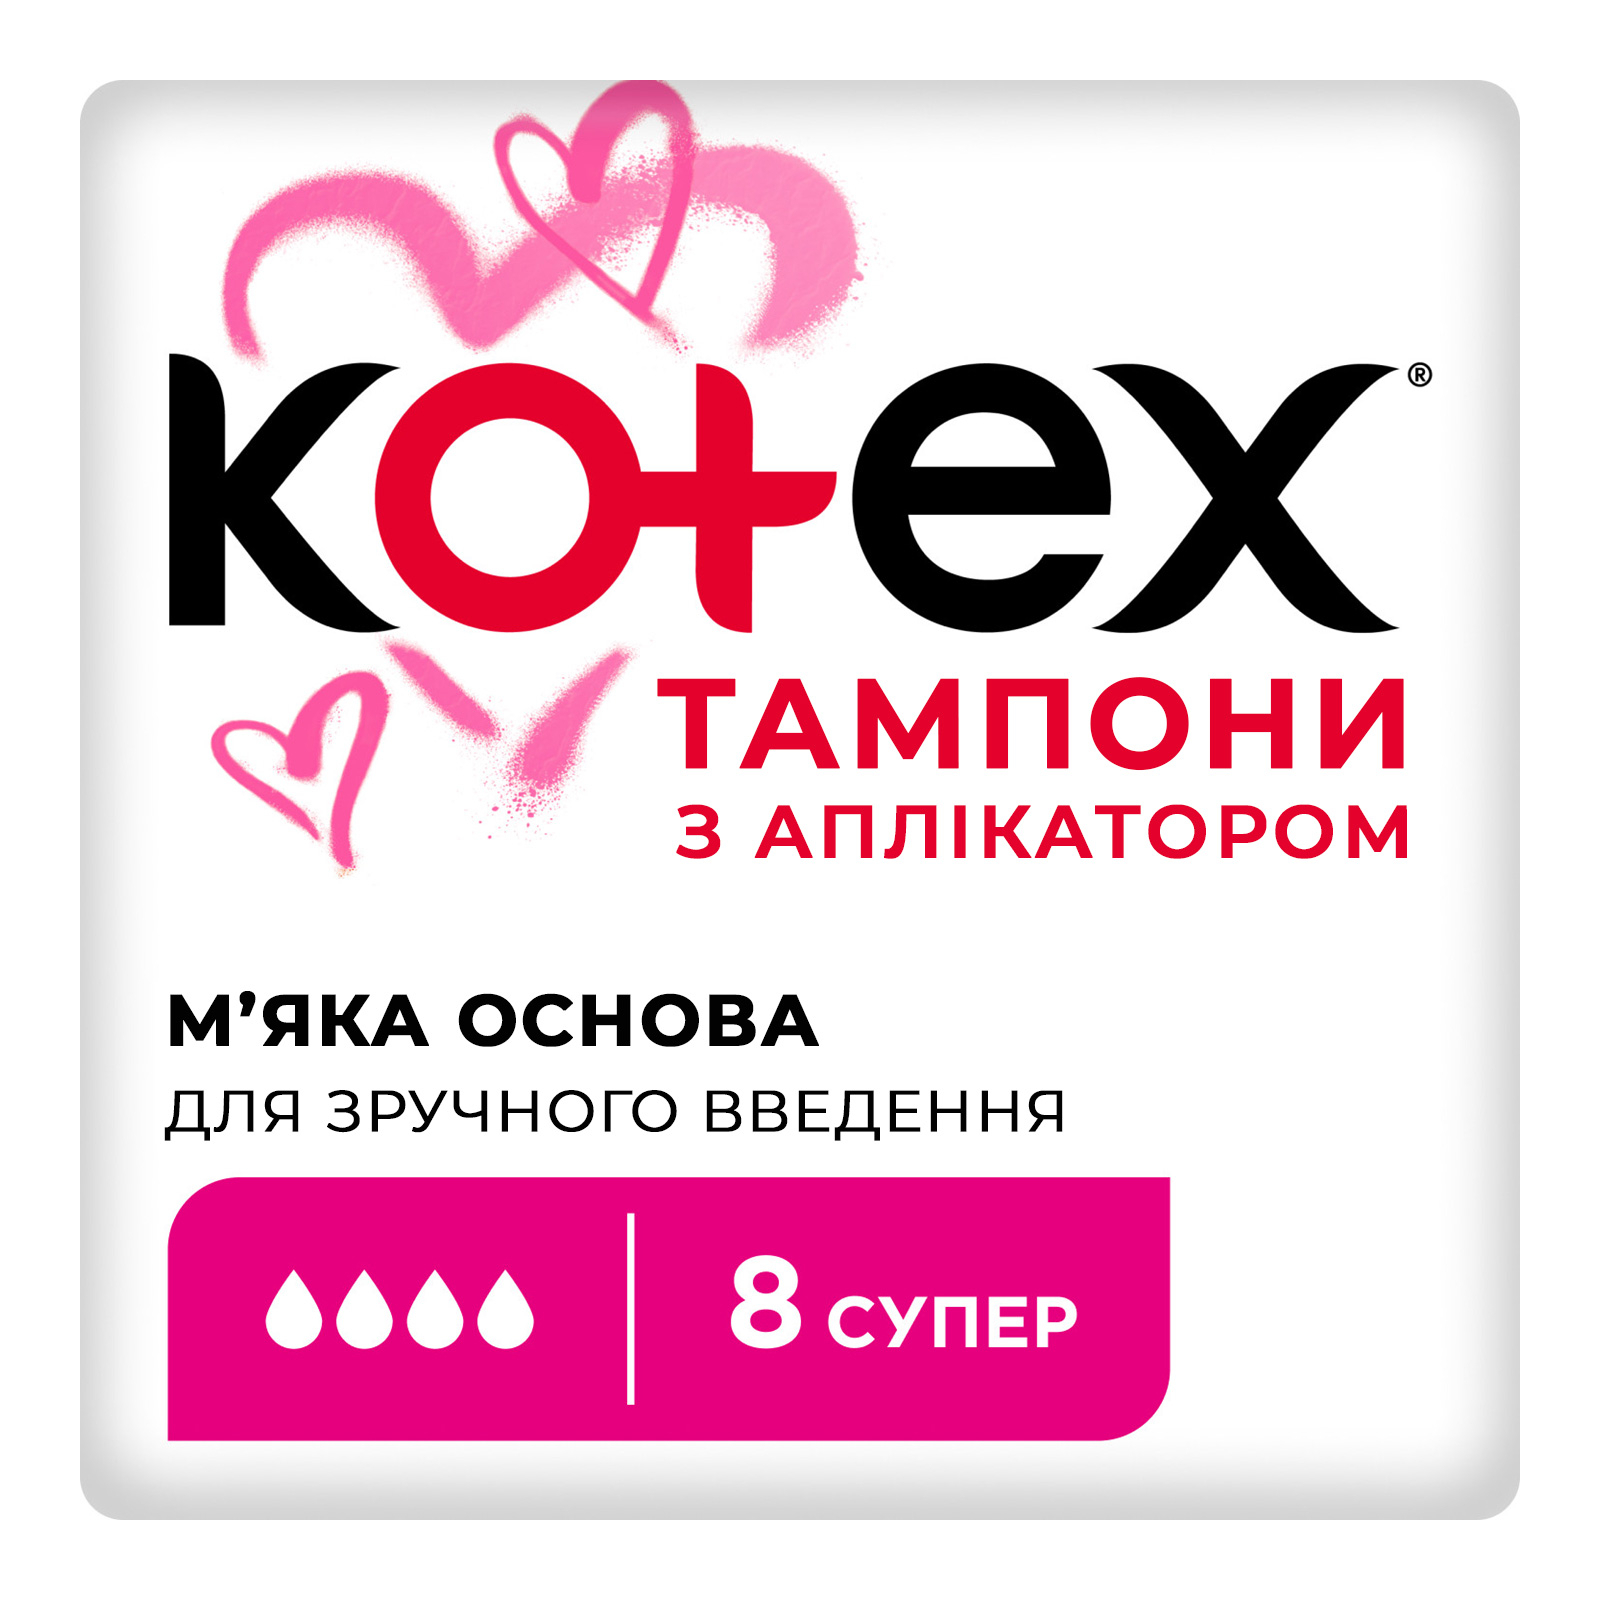 Тампоны Kotex Super с апликатором 8 шт. (5029053535265)